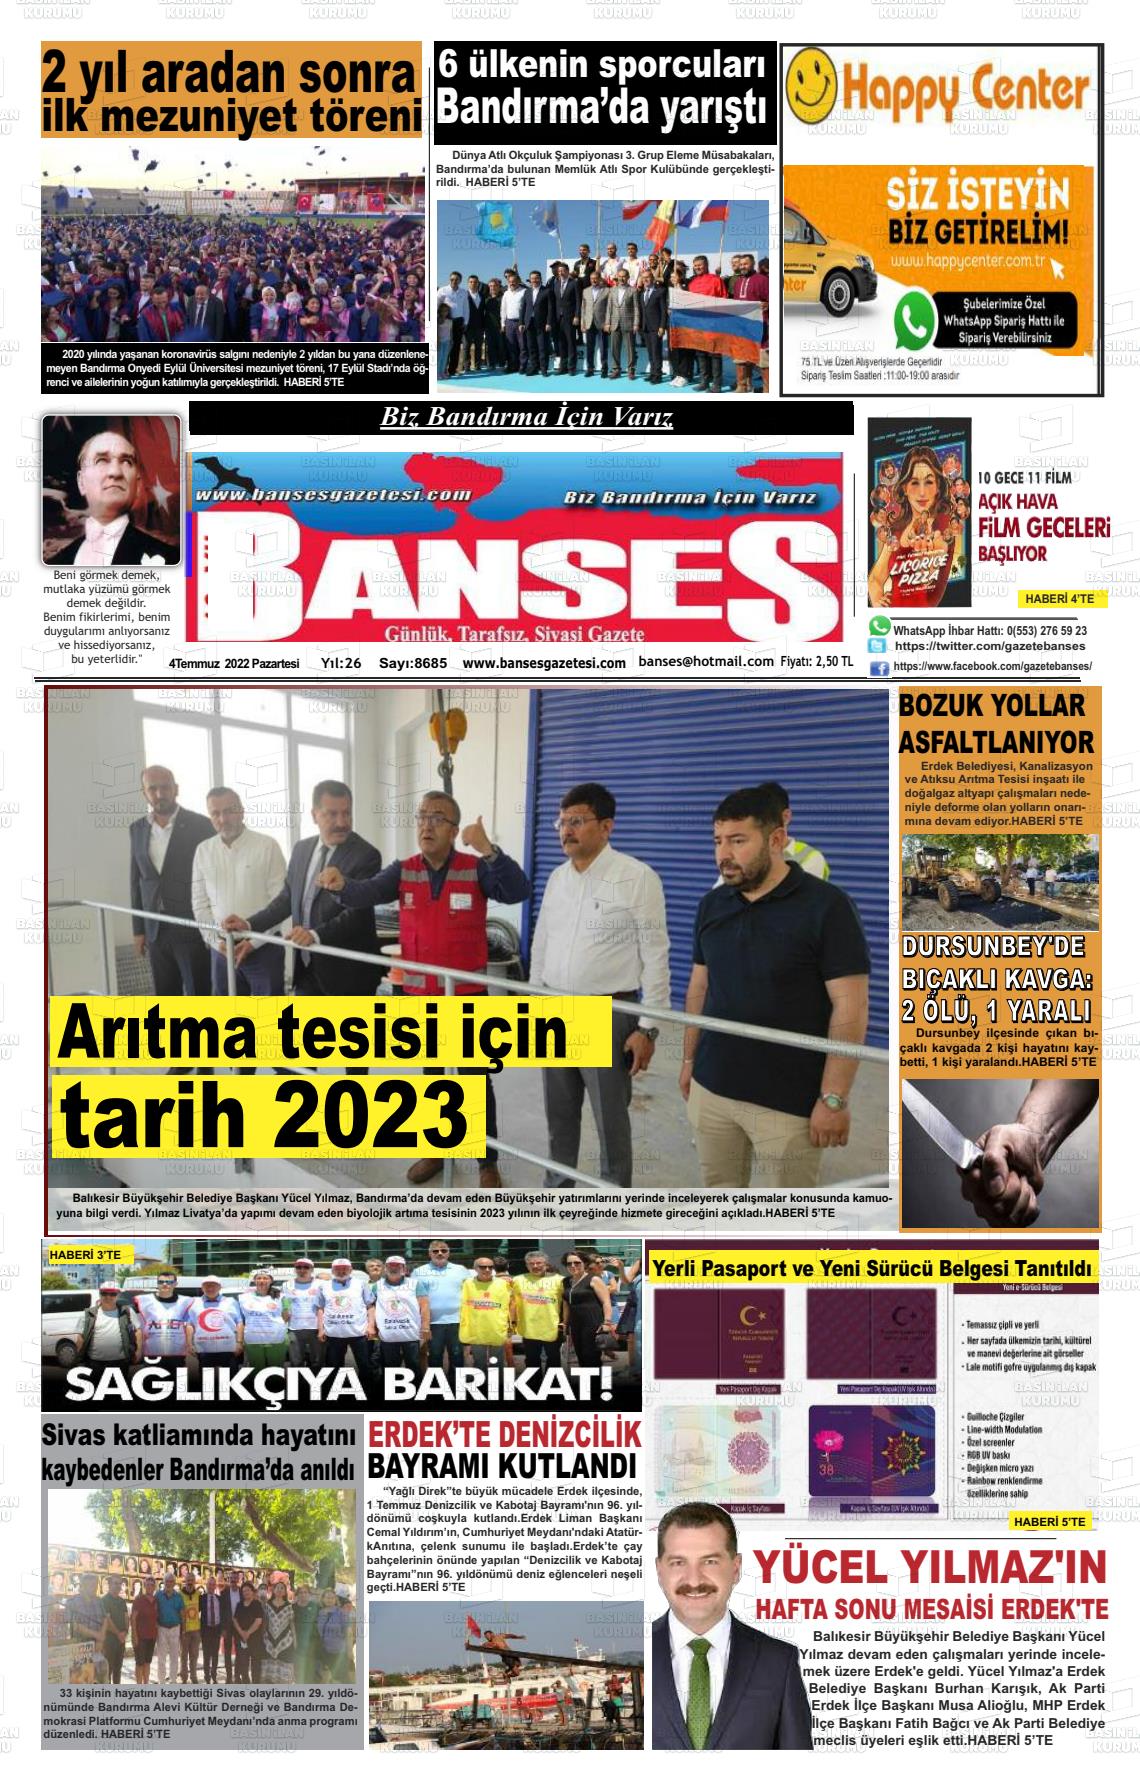 04 Temmuz 2022 Banses Gazete Manşeti